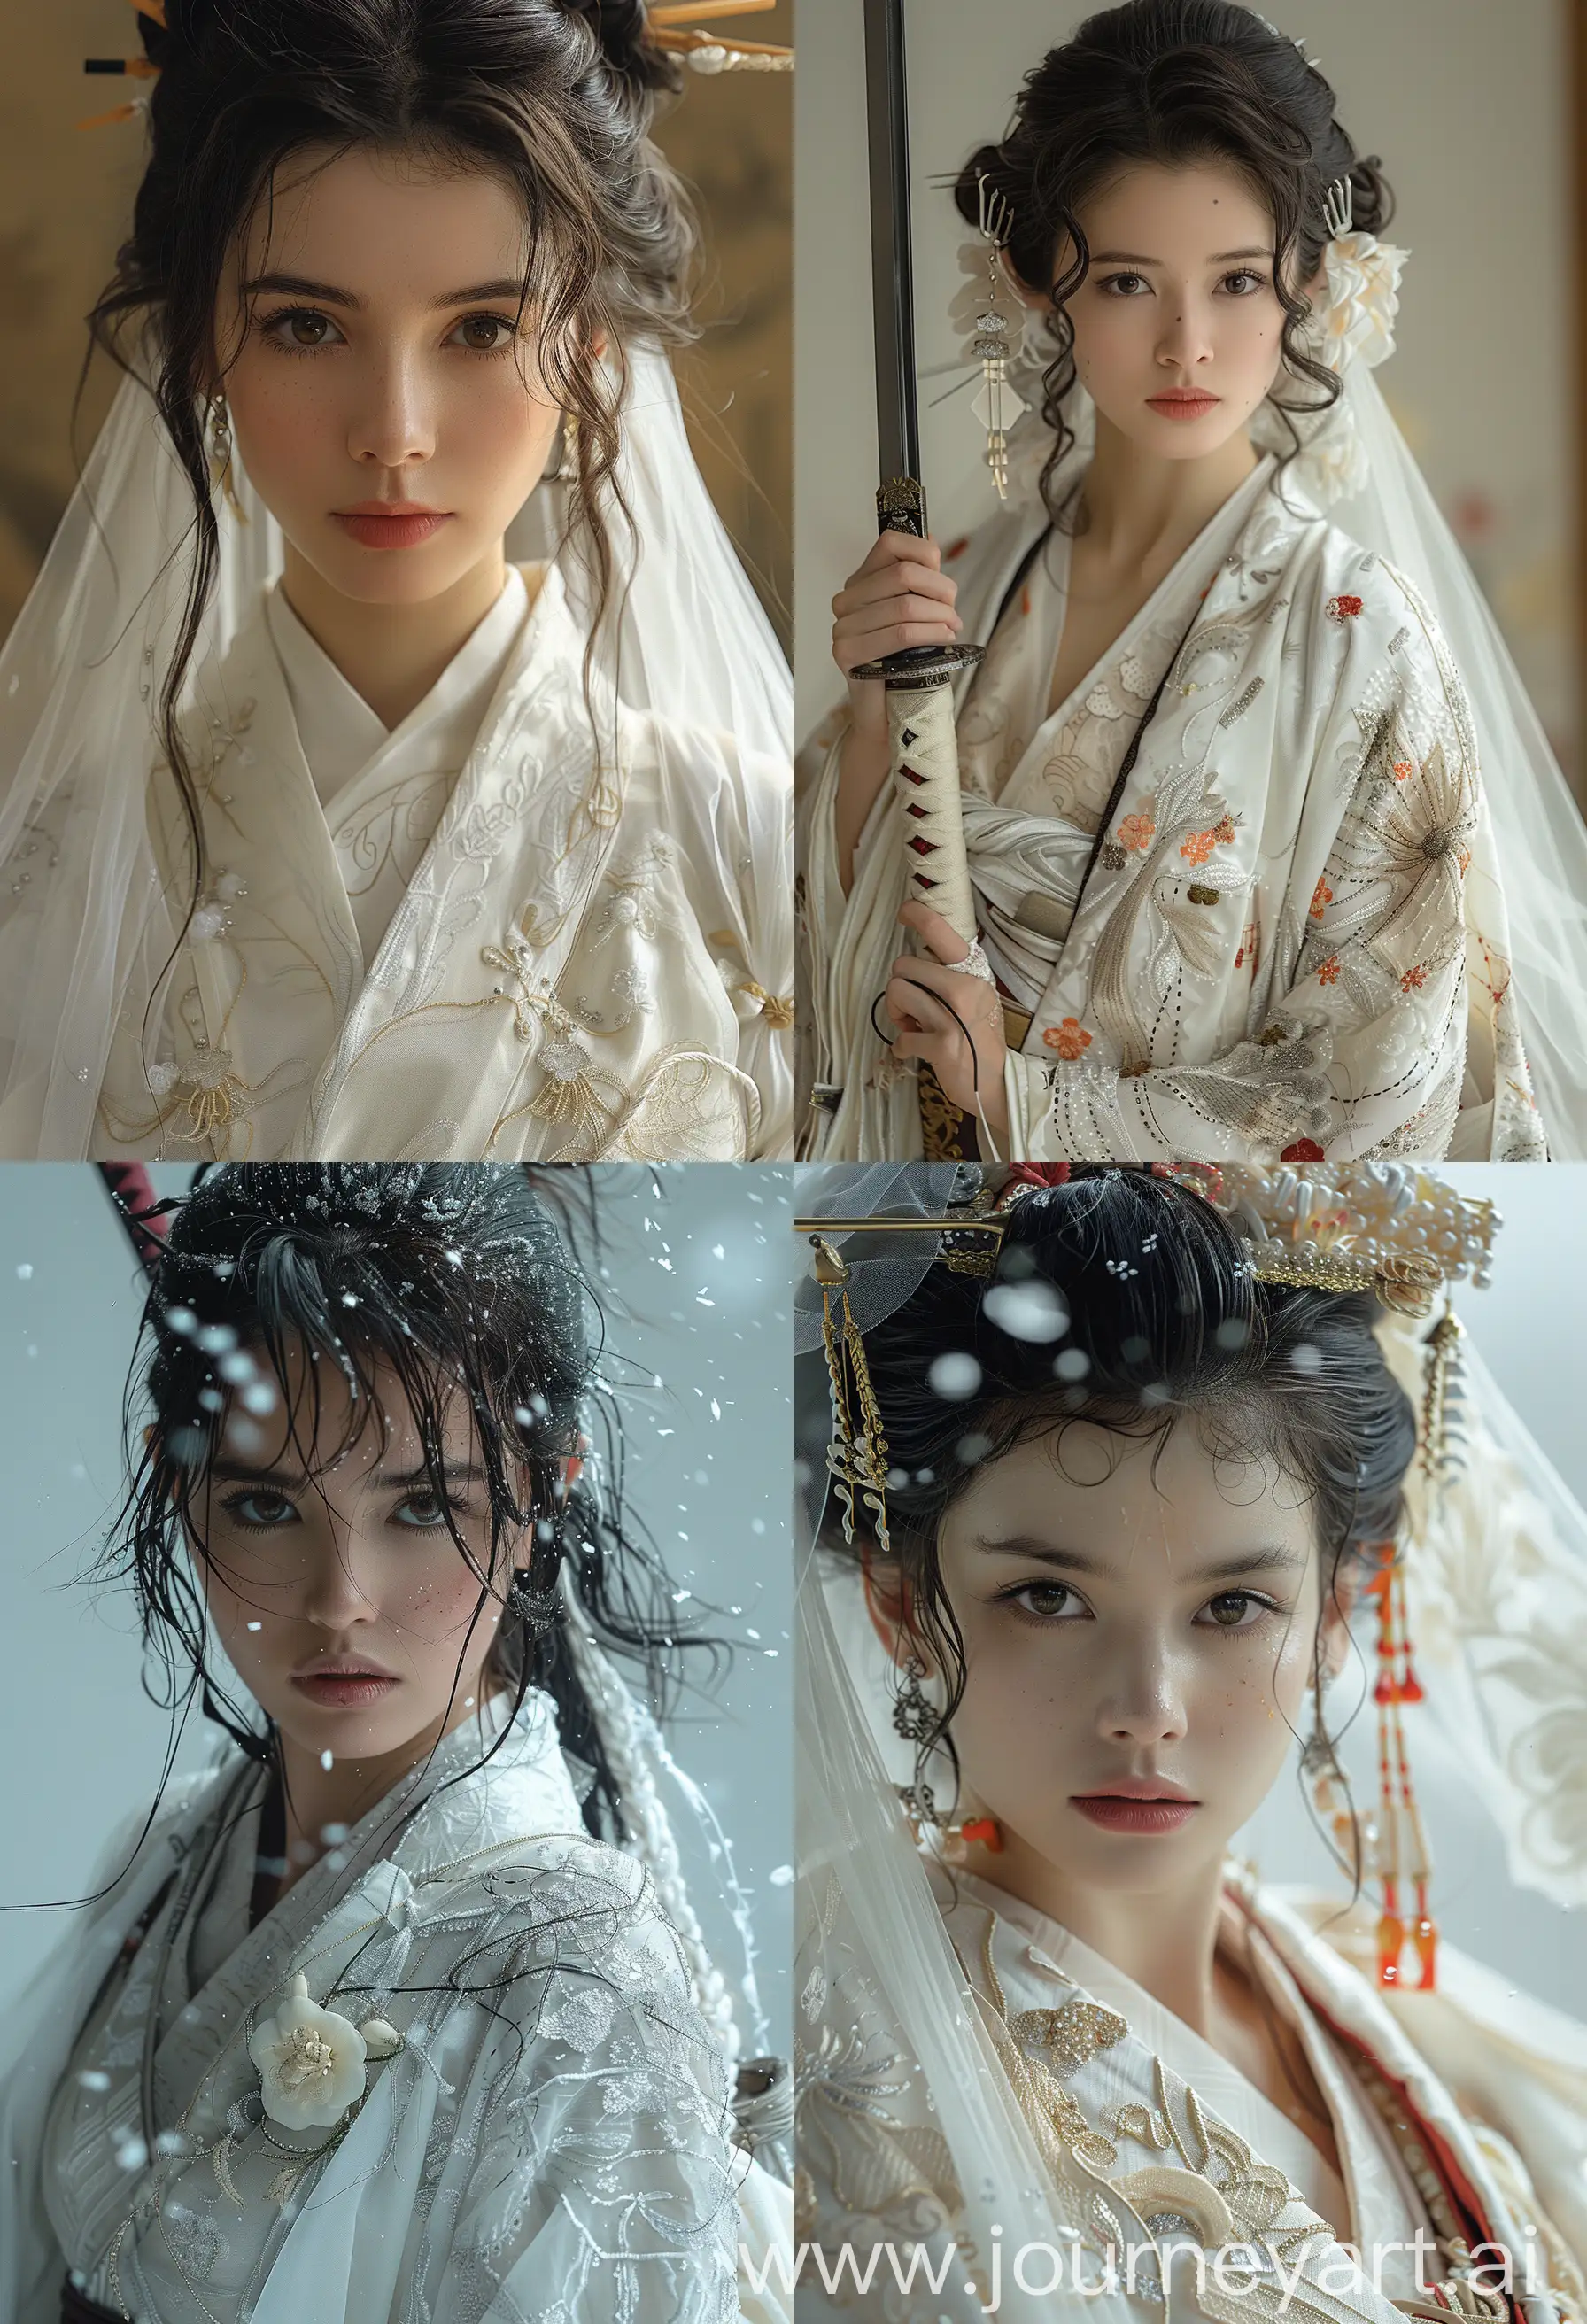 raiden shogun with a pure white wedding dress --s 750 --ar 13:19